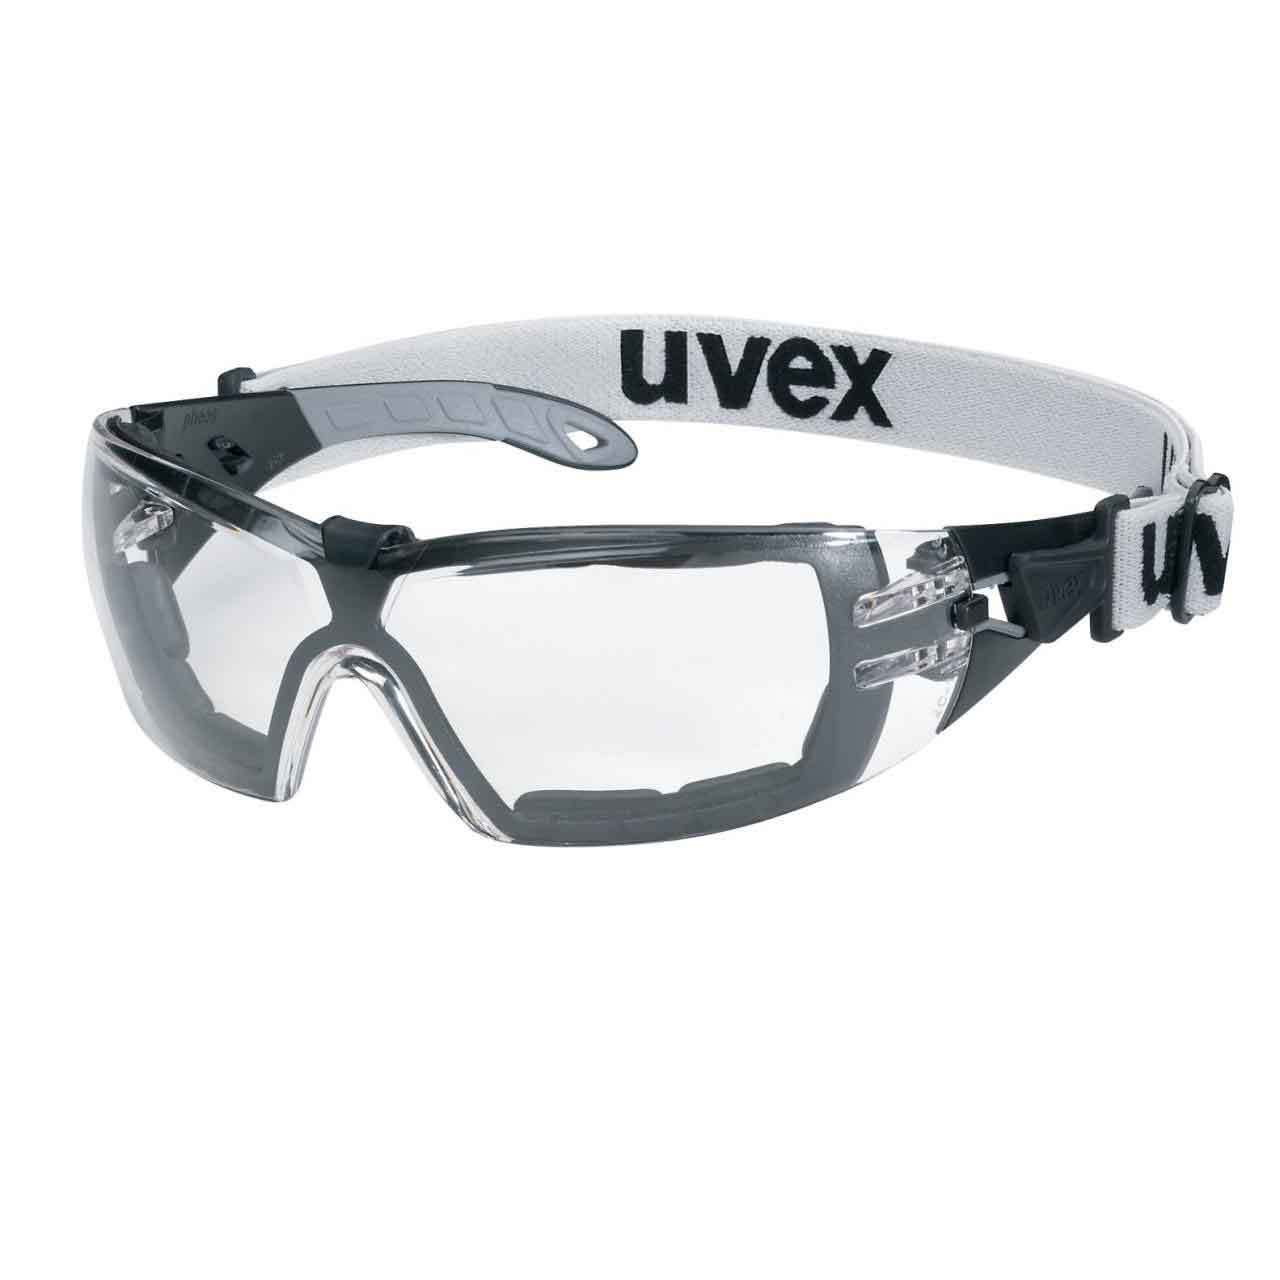 uvex laboratuvar gözlükleri